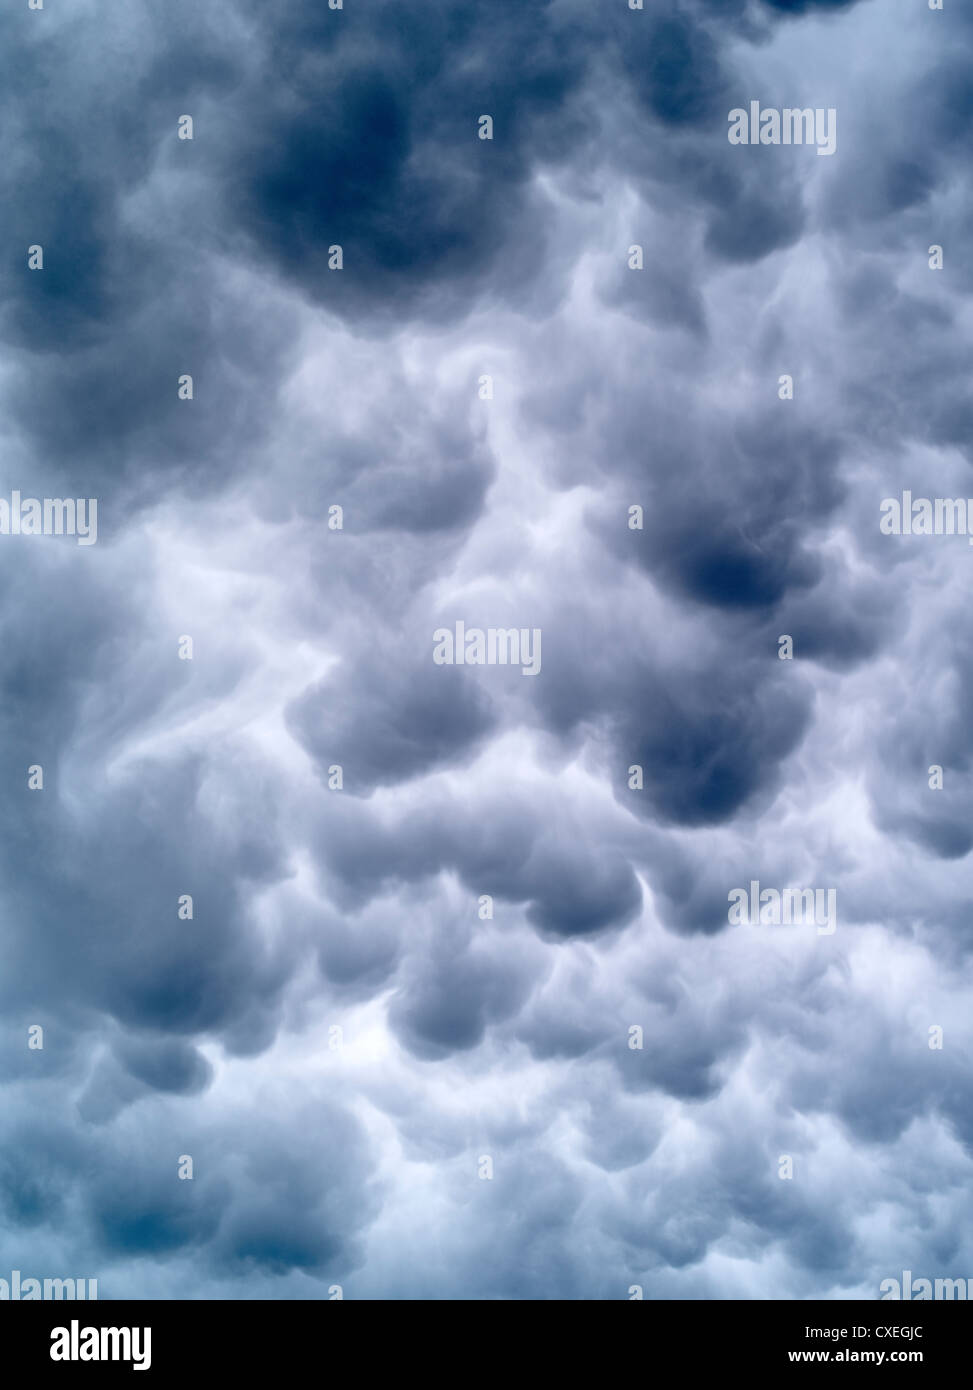 Bola de bolos nubes de acercarse a una tormenta. Foto de stock